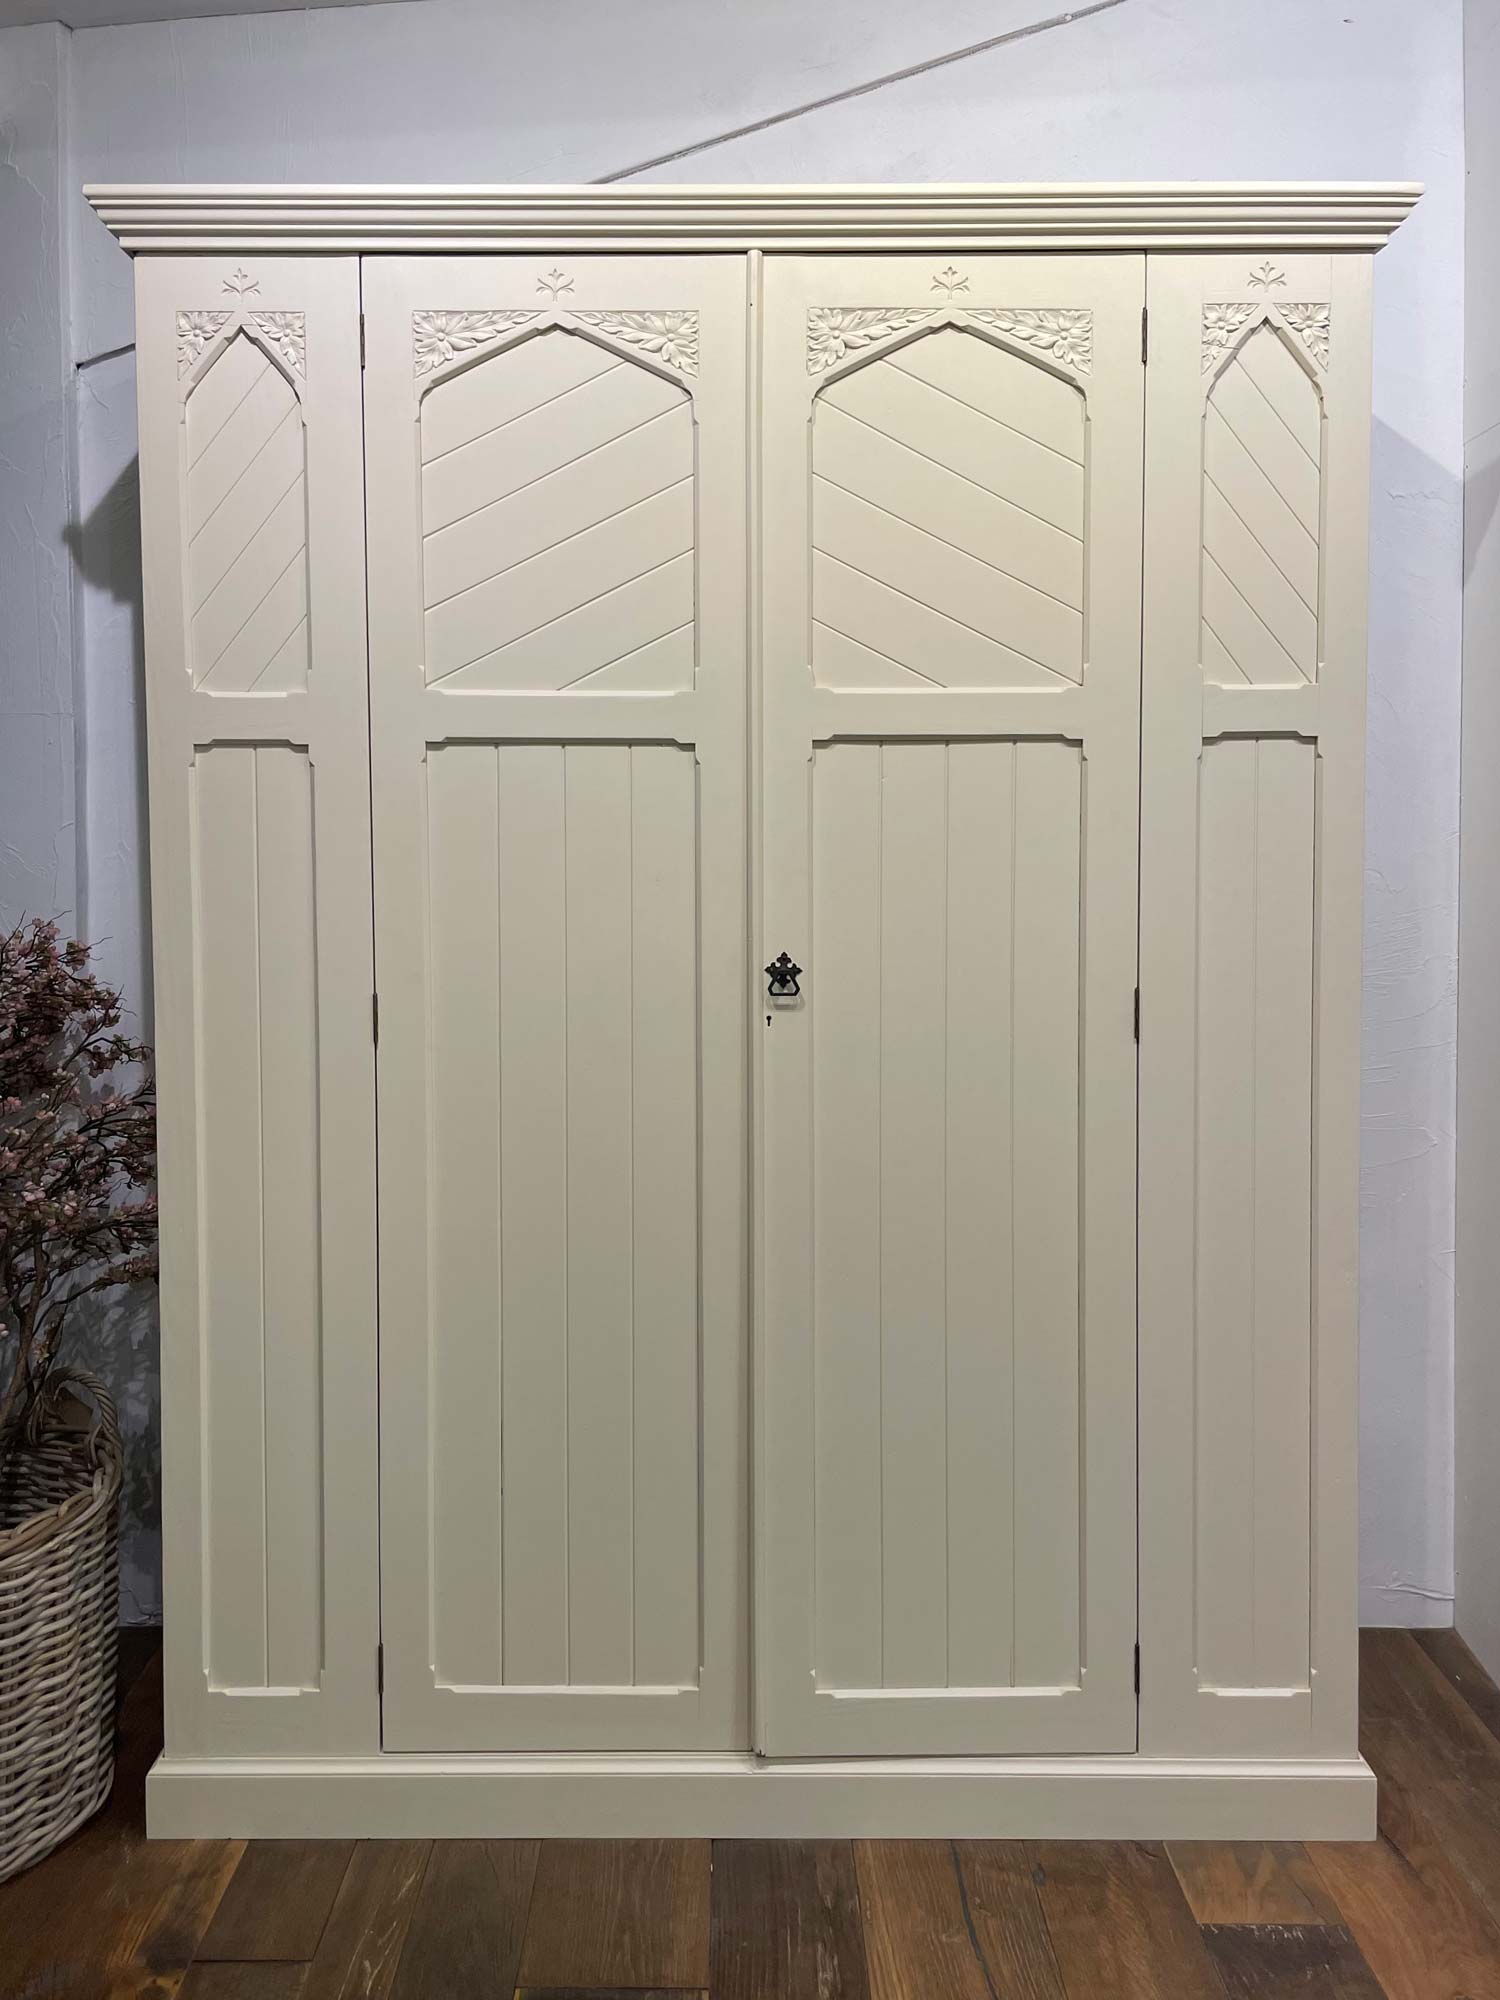 Original painted double door wardrobe